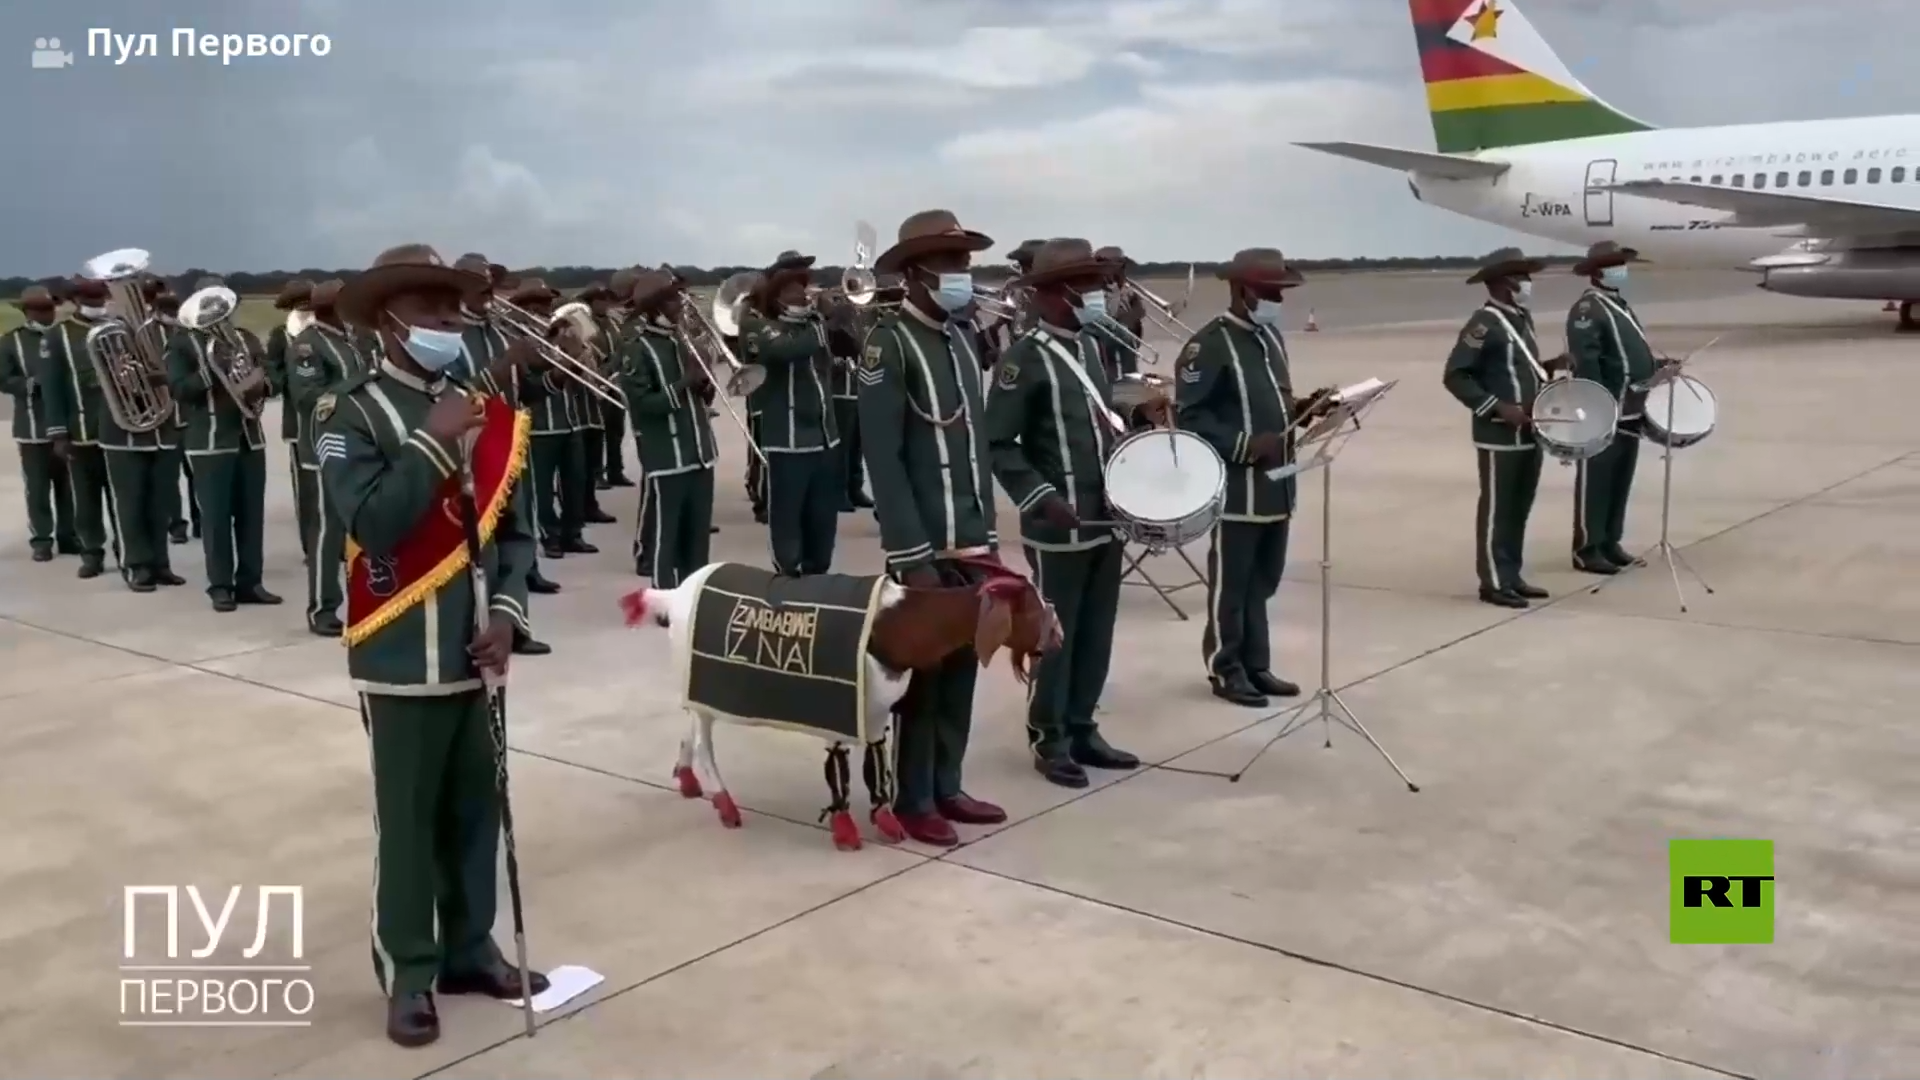 شاهد.. ماعز يلفت انتباه خلال مراسم توديع لوكاشينكو في زيمبابوي